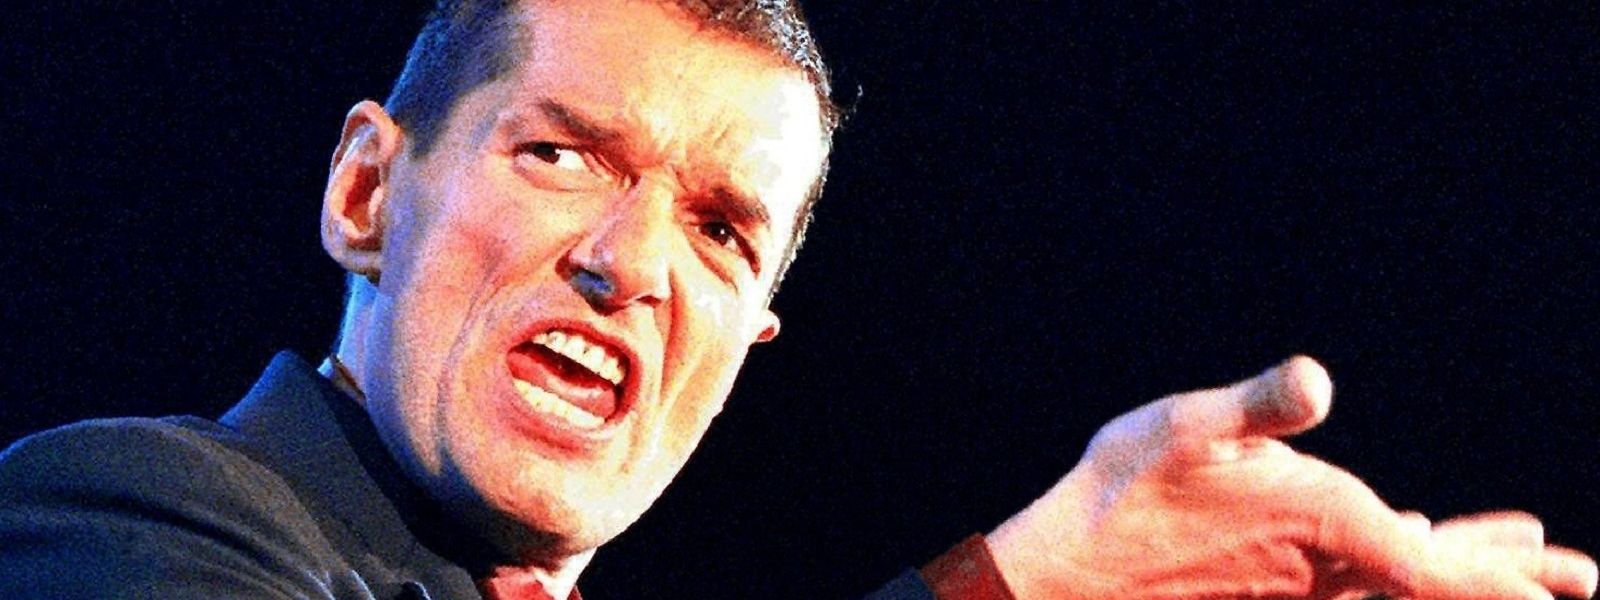 Der österreichische Popstar Falco bei einem Auftritt im Jahr 1997 in Wien. Auch 25 Jahre nach seinem Unfalltod bleibt sein Einfluss auf die Musikszene deutlich spürbar. 